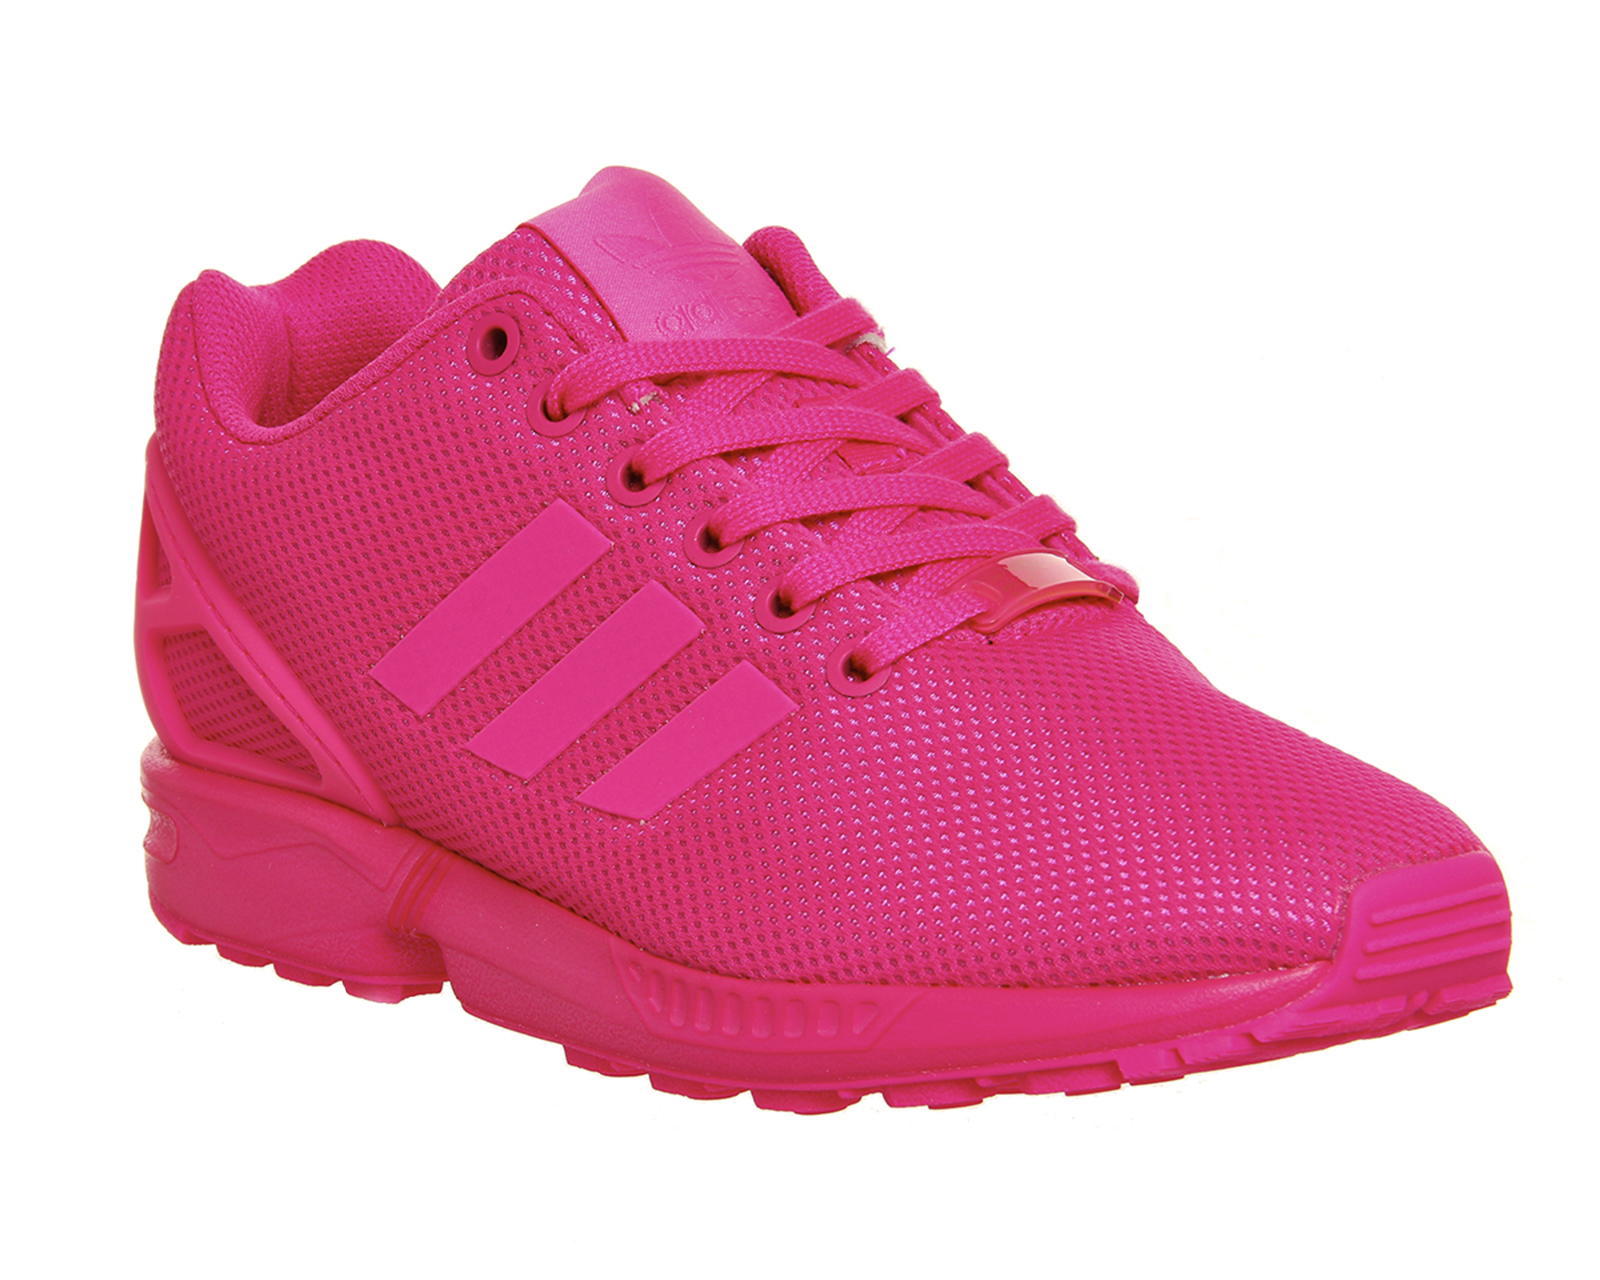 adidas zx flux womens pink